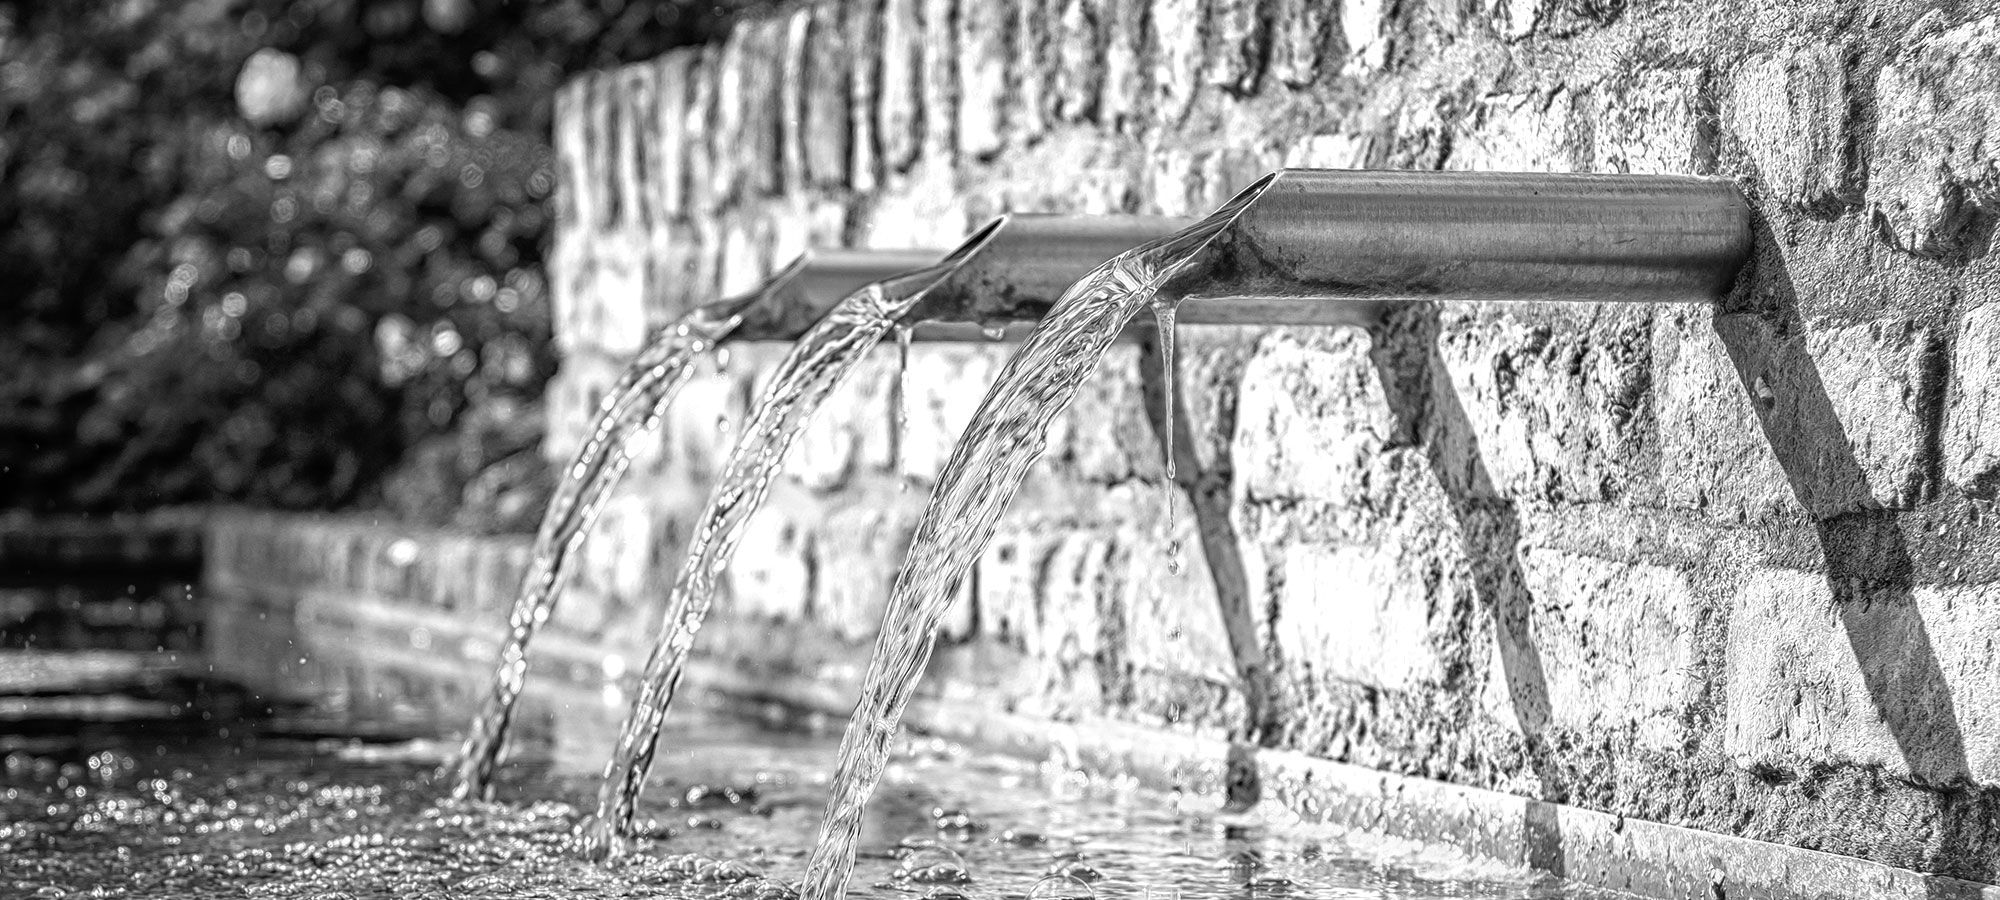 Brunnen mit Wasser in Trinkwasserqualität